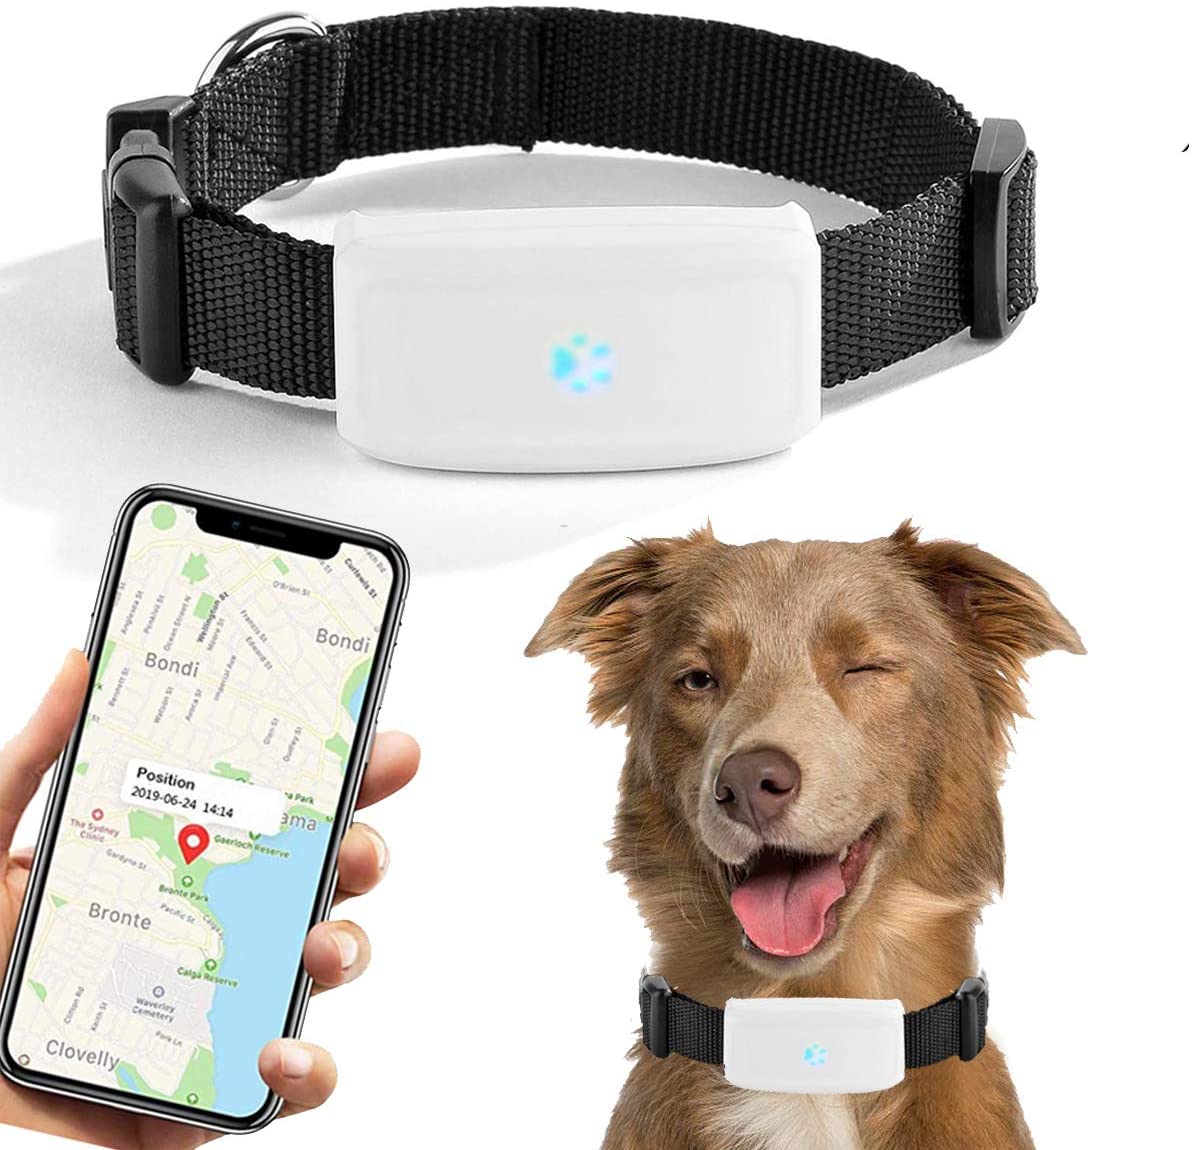 LOCALIZADOR GPS WEENECT PERRO Rastreador de perros